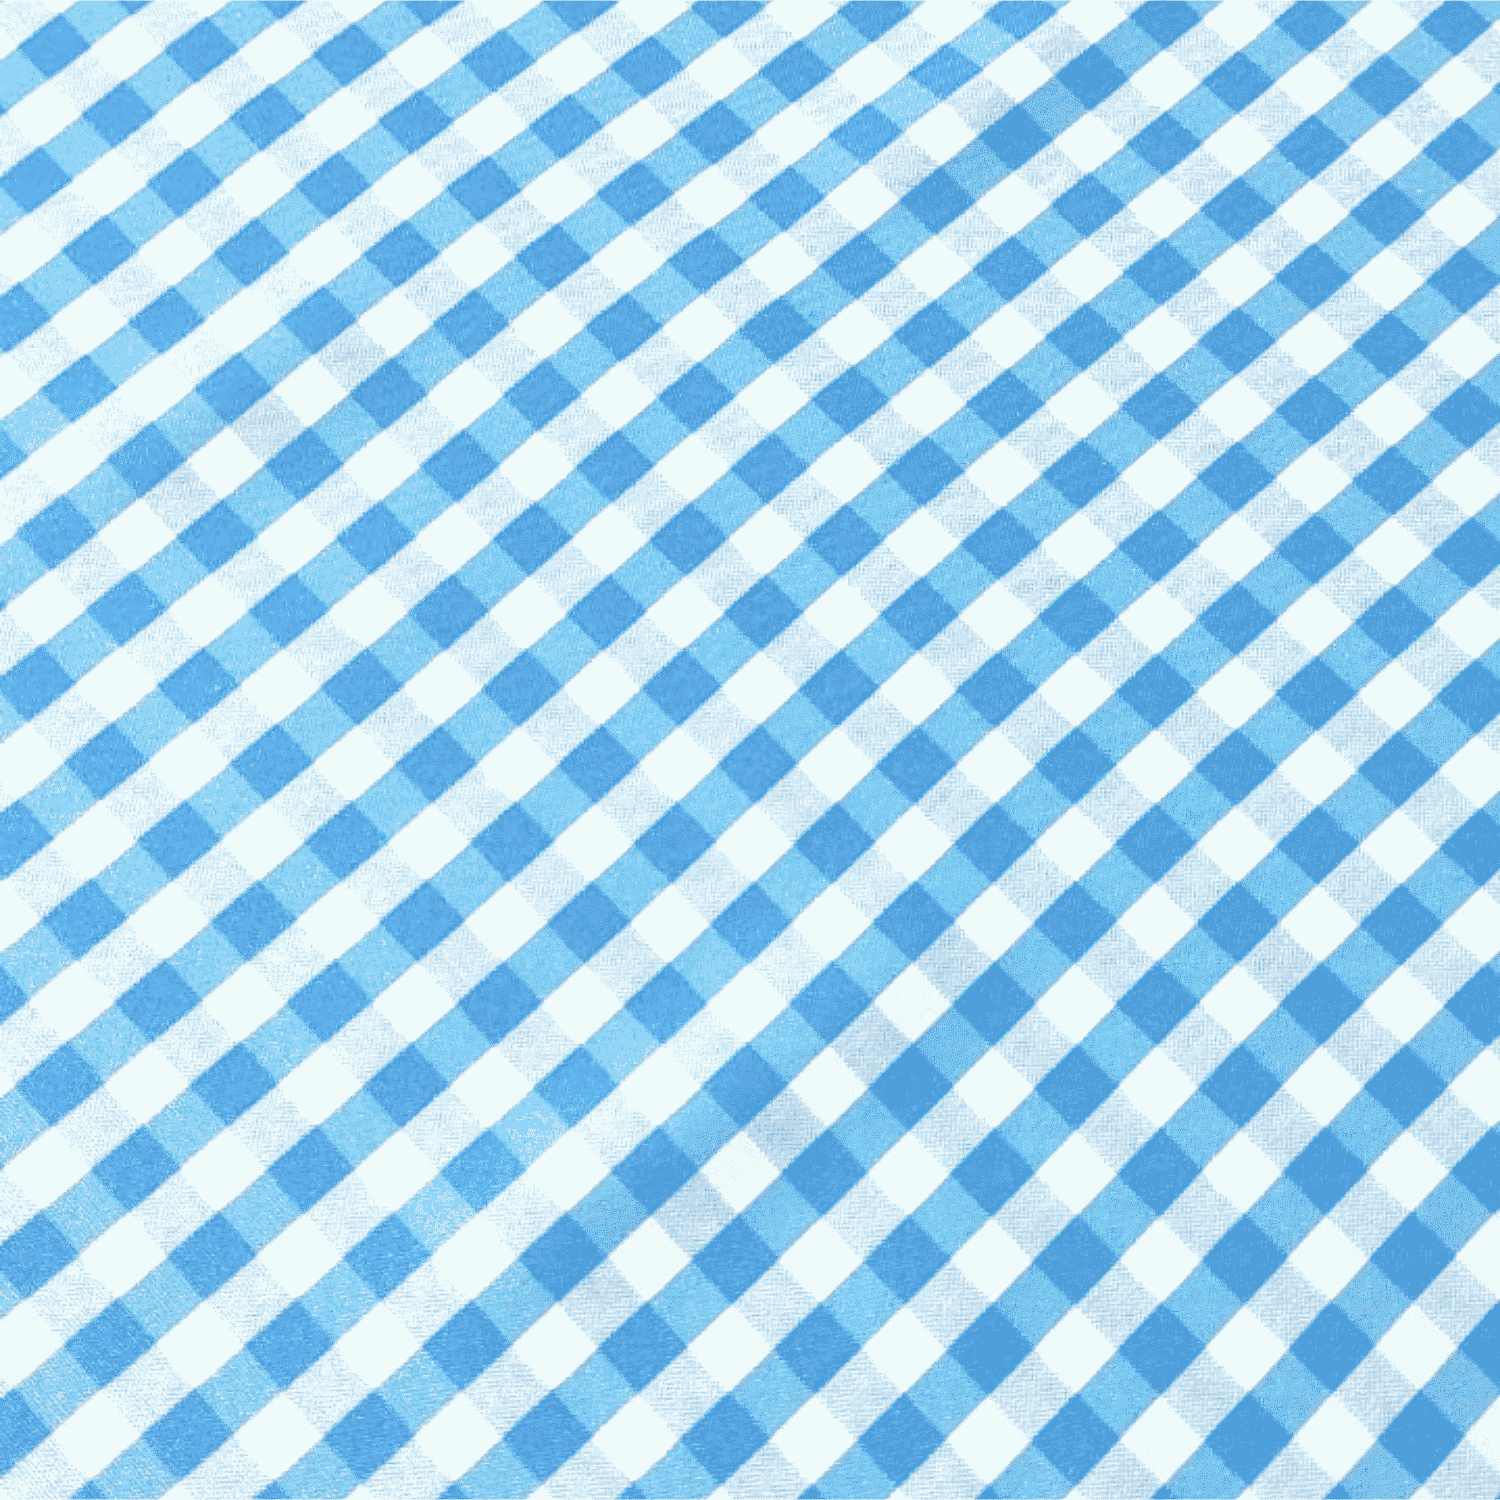 quadretto-azzurro-austin-tovaglia-antimacchia-idrorepellente-quadratini-geometrico-bianco-azzurro-dettaglio